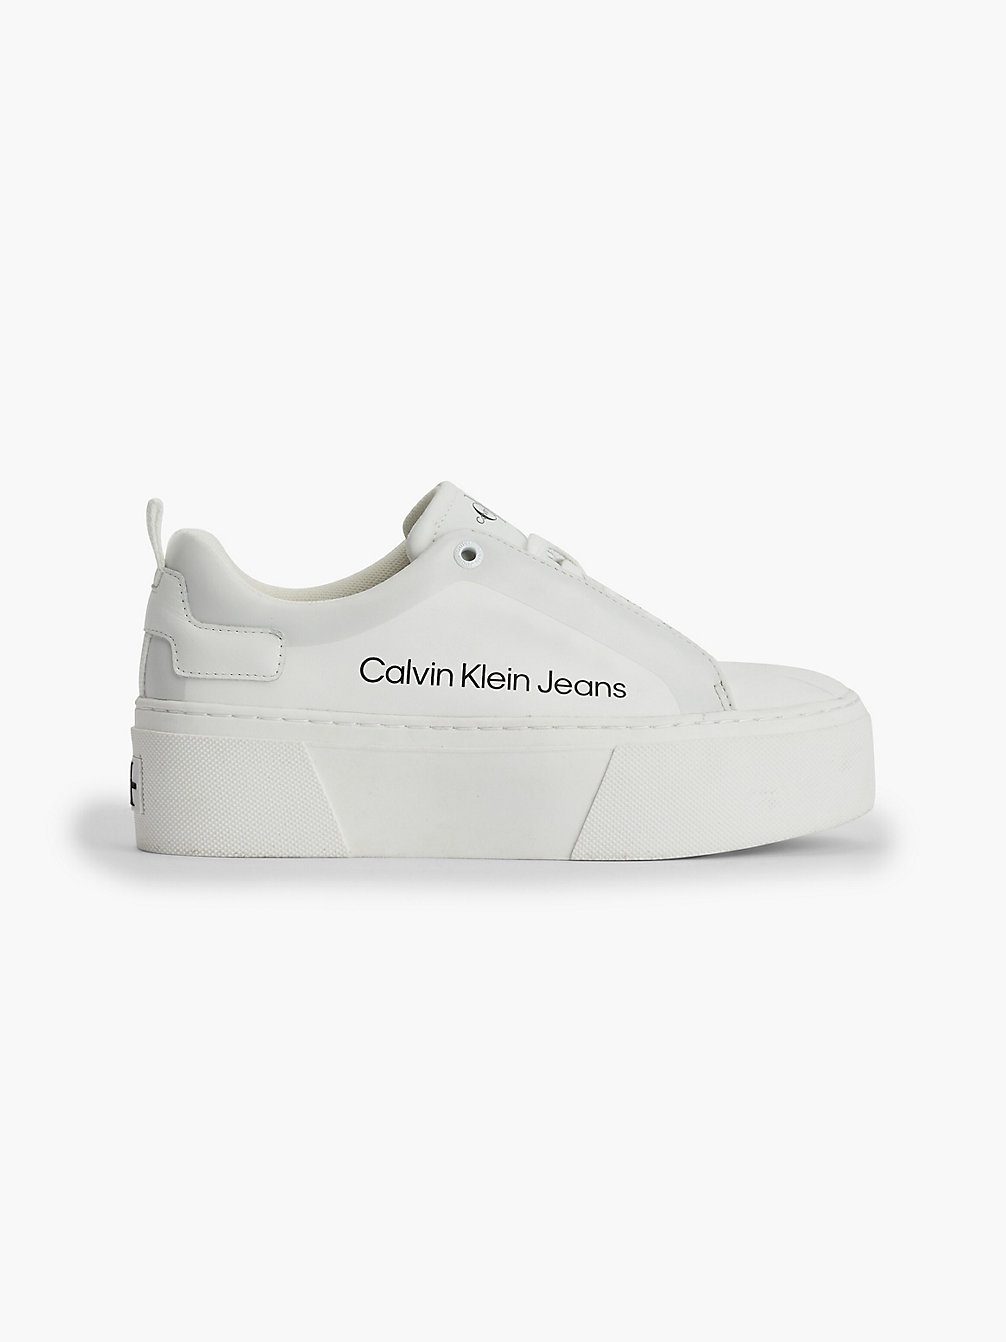 BRIGHT WHITE > Кожаные кроссовки на платформе > undefined Женщины - Calvin Klein